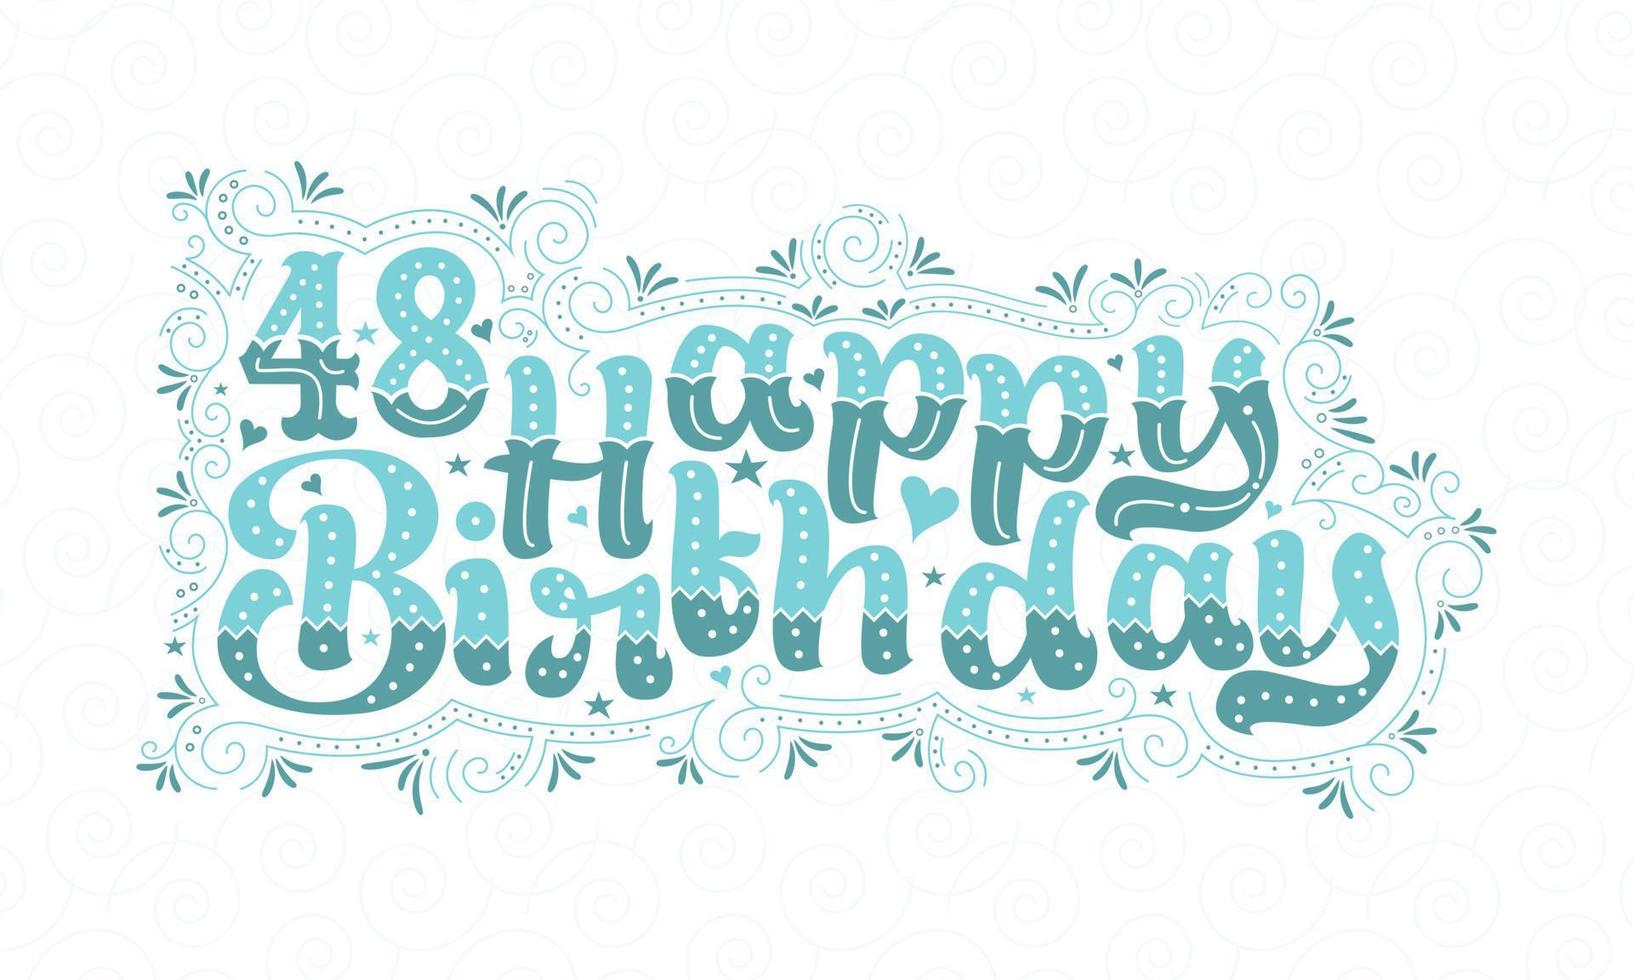 48. alles Gute zum Geburtstag Schriftzug, 48 Jahre Geburtstag schönes Typografie-Design mit Aquapunkten, Linien und Blättern. vektor